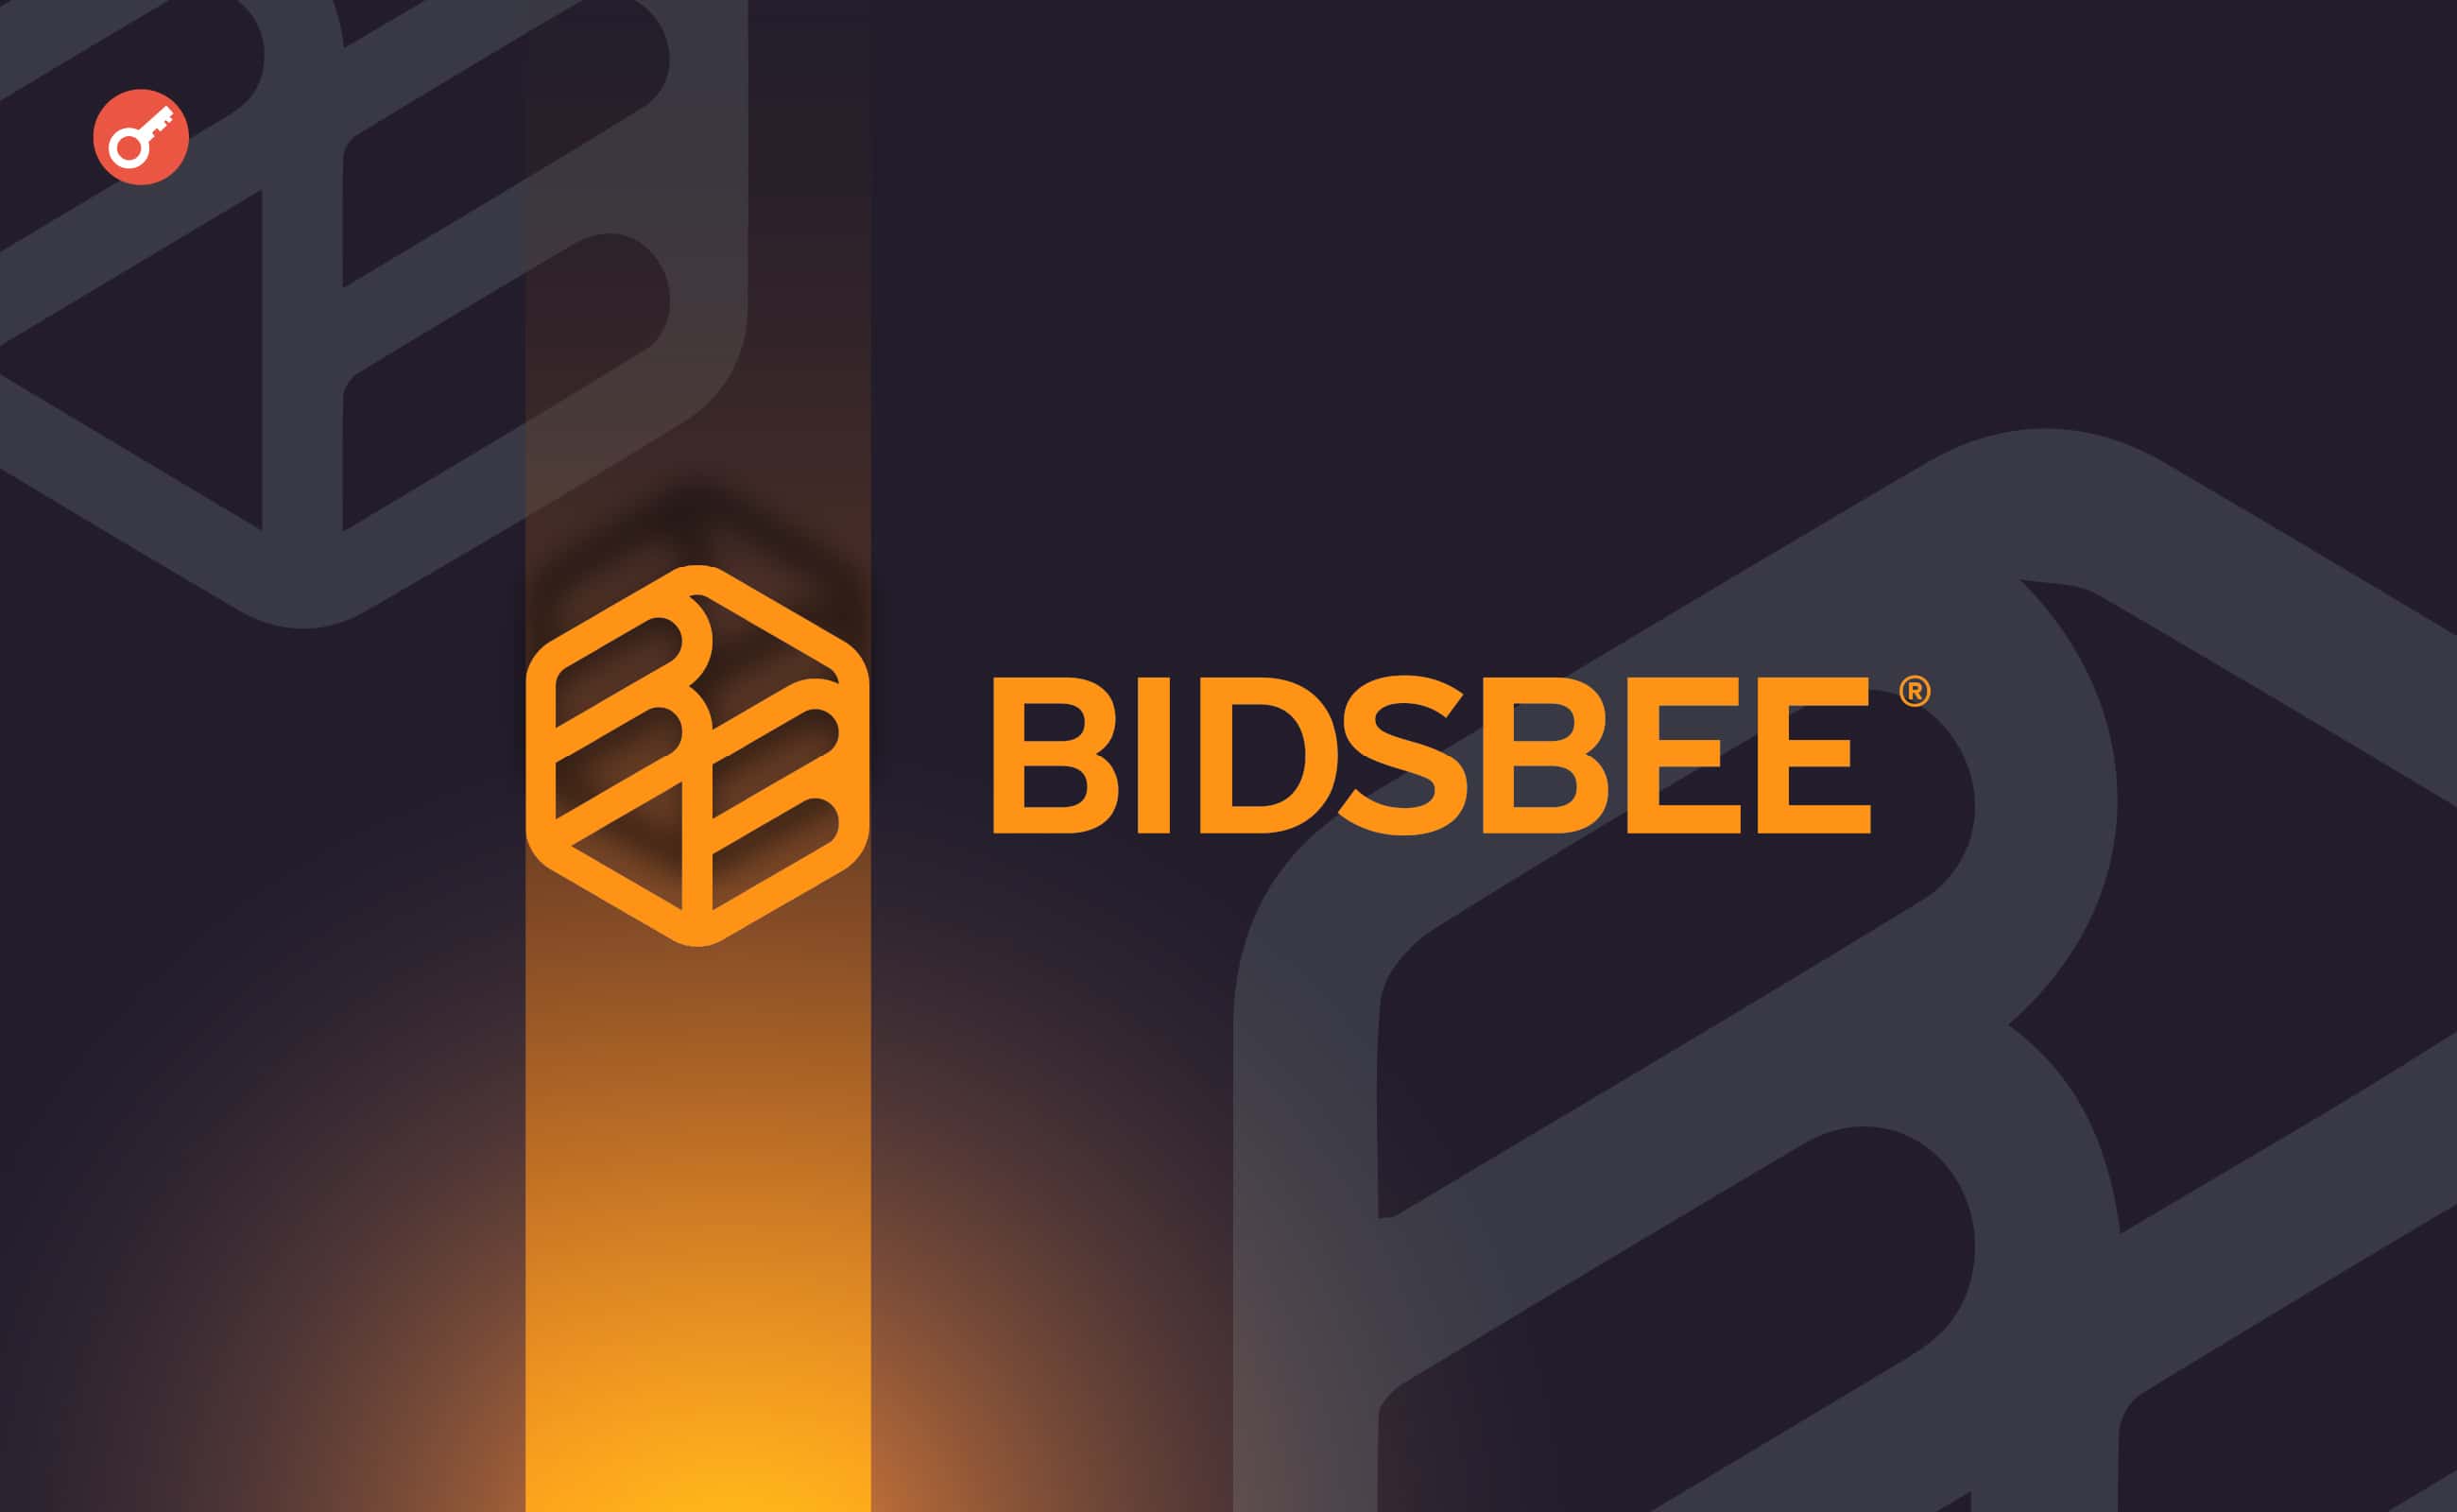 Українські розробники запустили платформу соціальної торгівлі Bidsbee. Головний колаж новини.